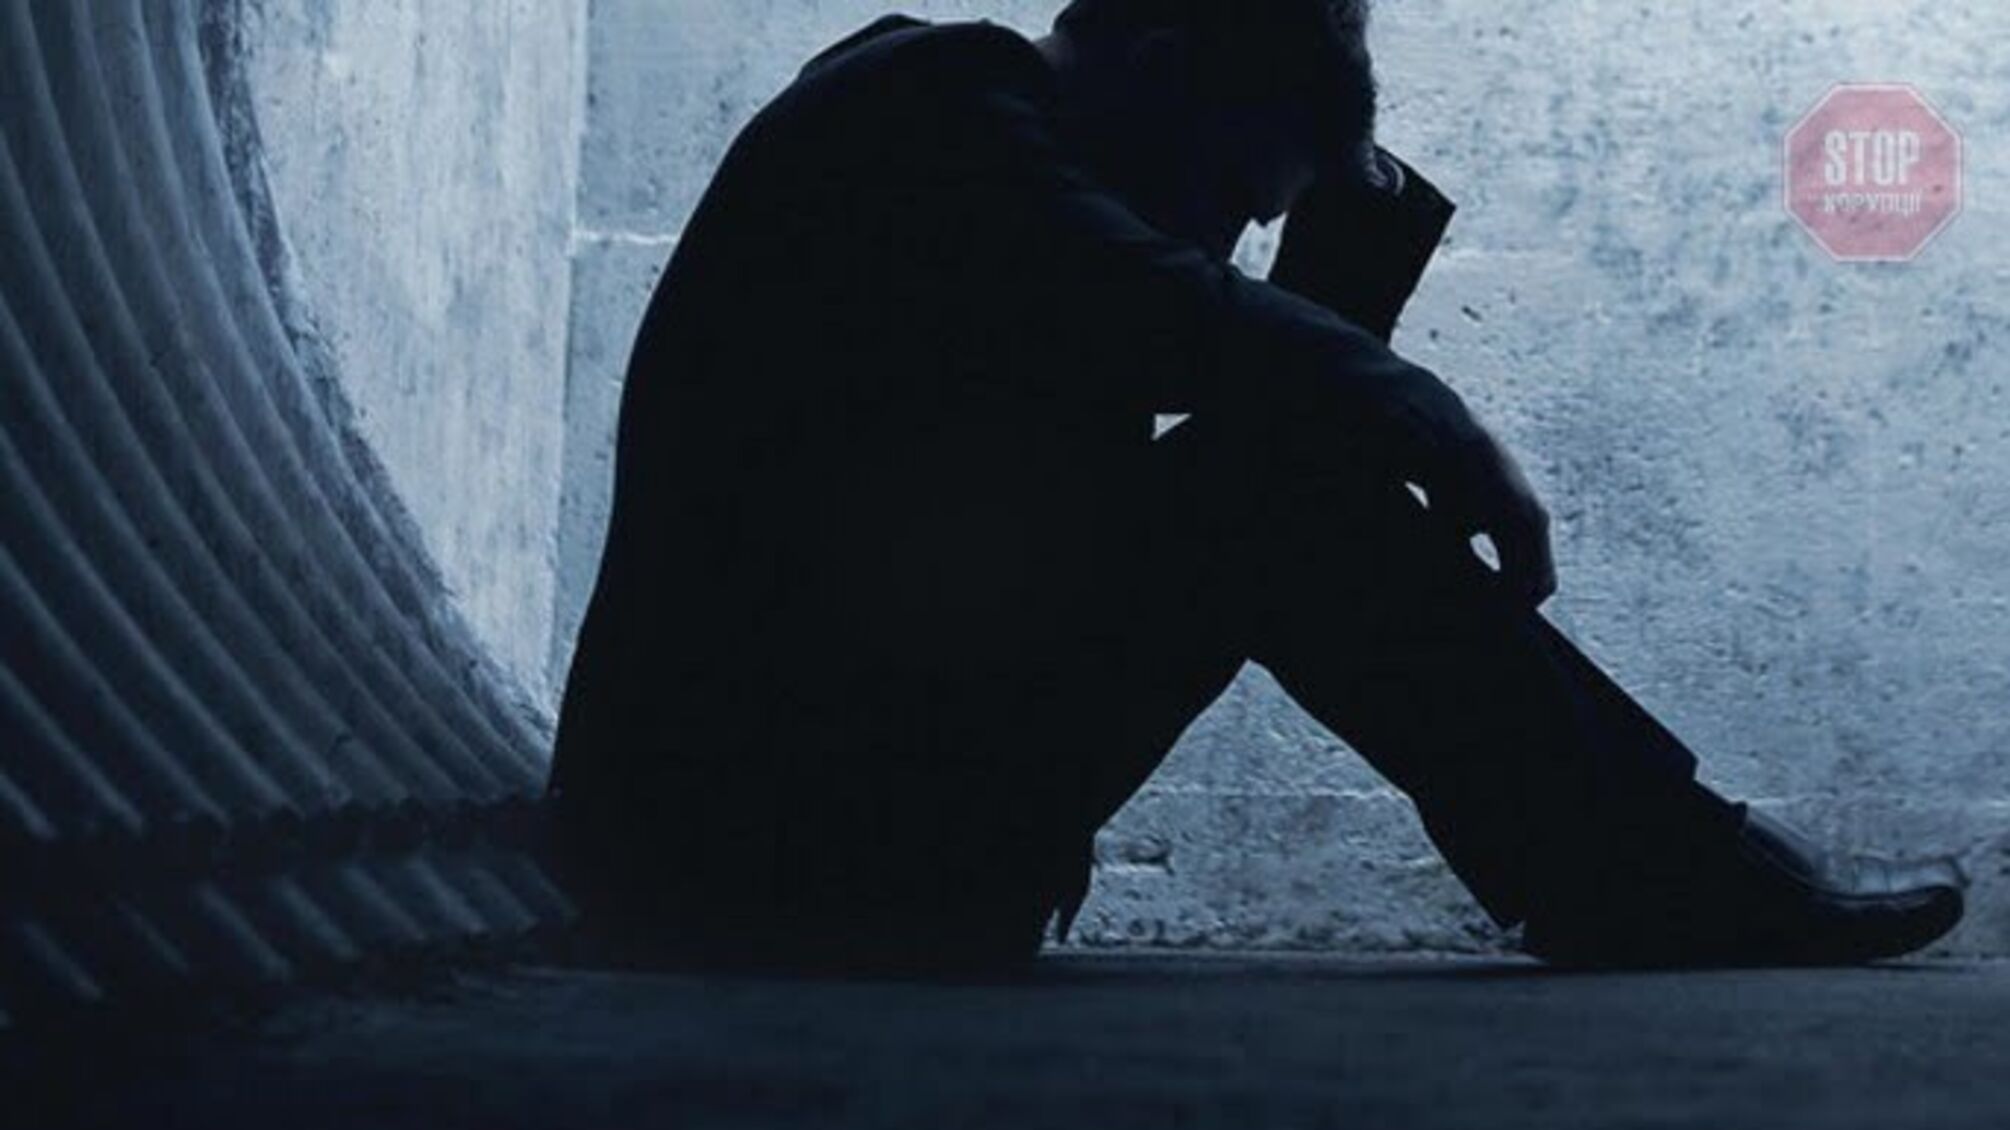 Звірячі умови та приниження – у вінницькому закладі люди з психічними порушеннями терплять цілодобові знущання (відео)